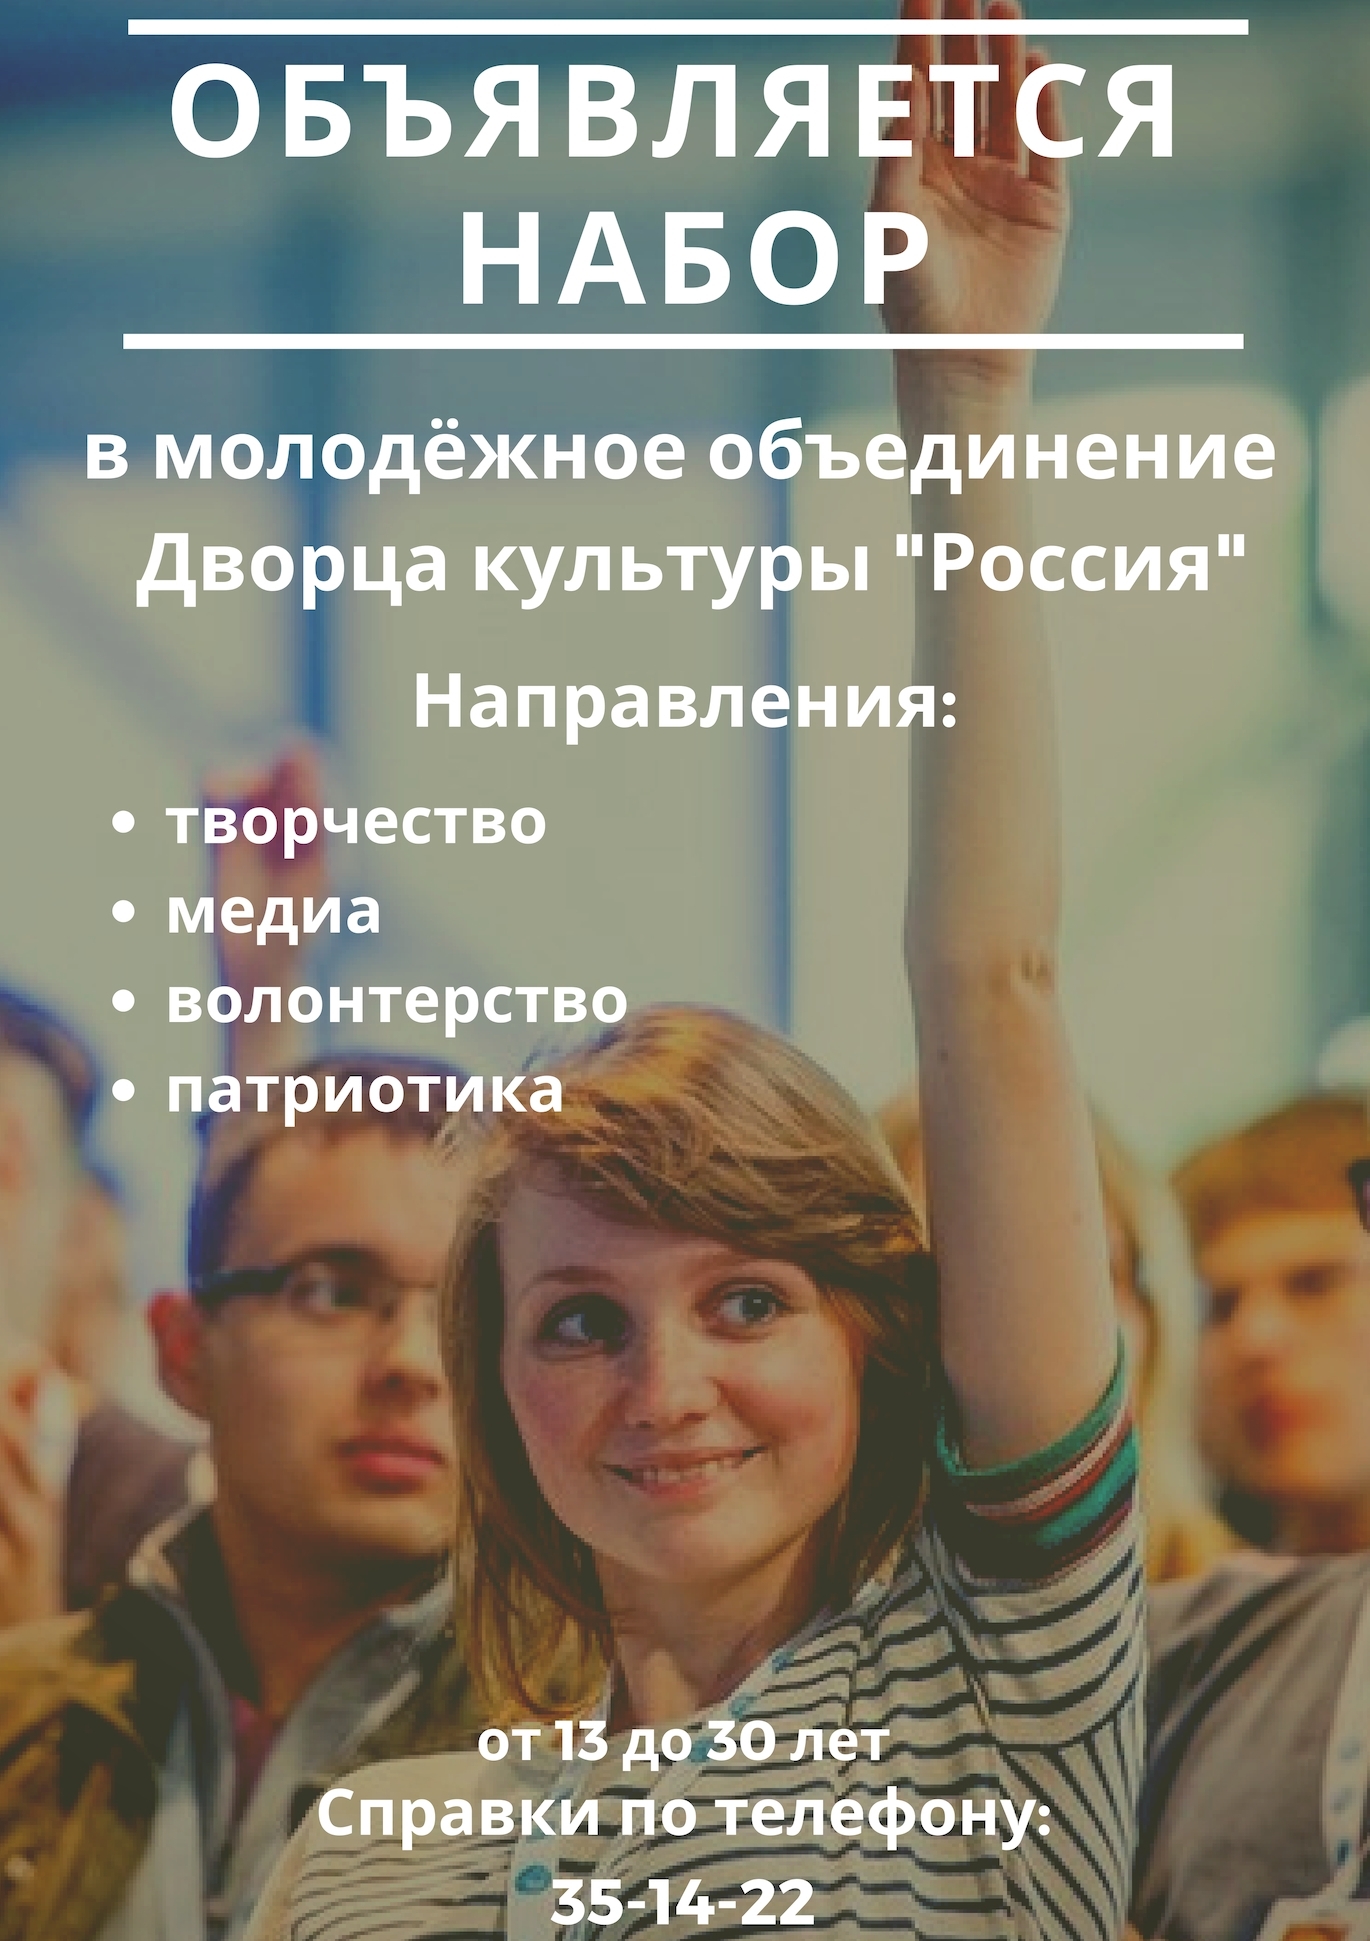 Объявляется набор в молодежное объединение Дворца культуры «Россия»